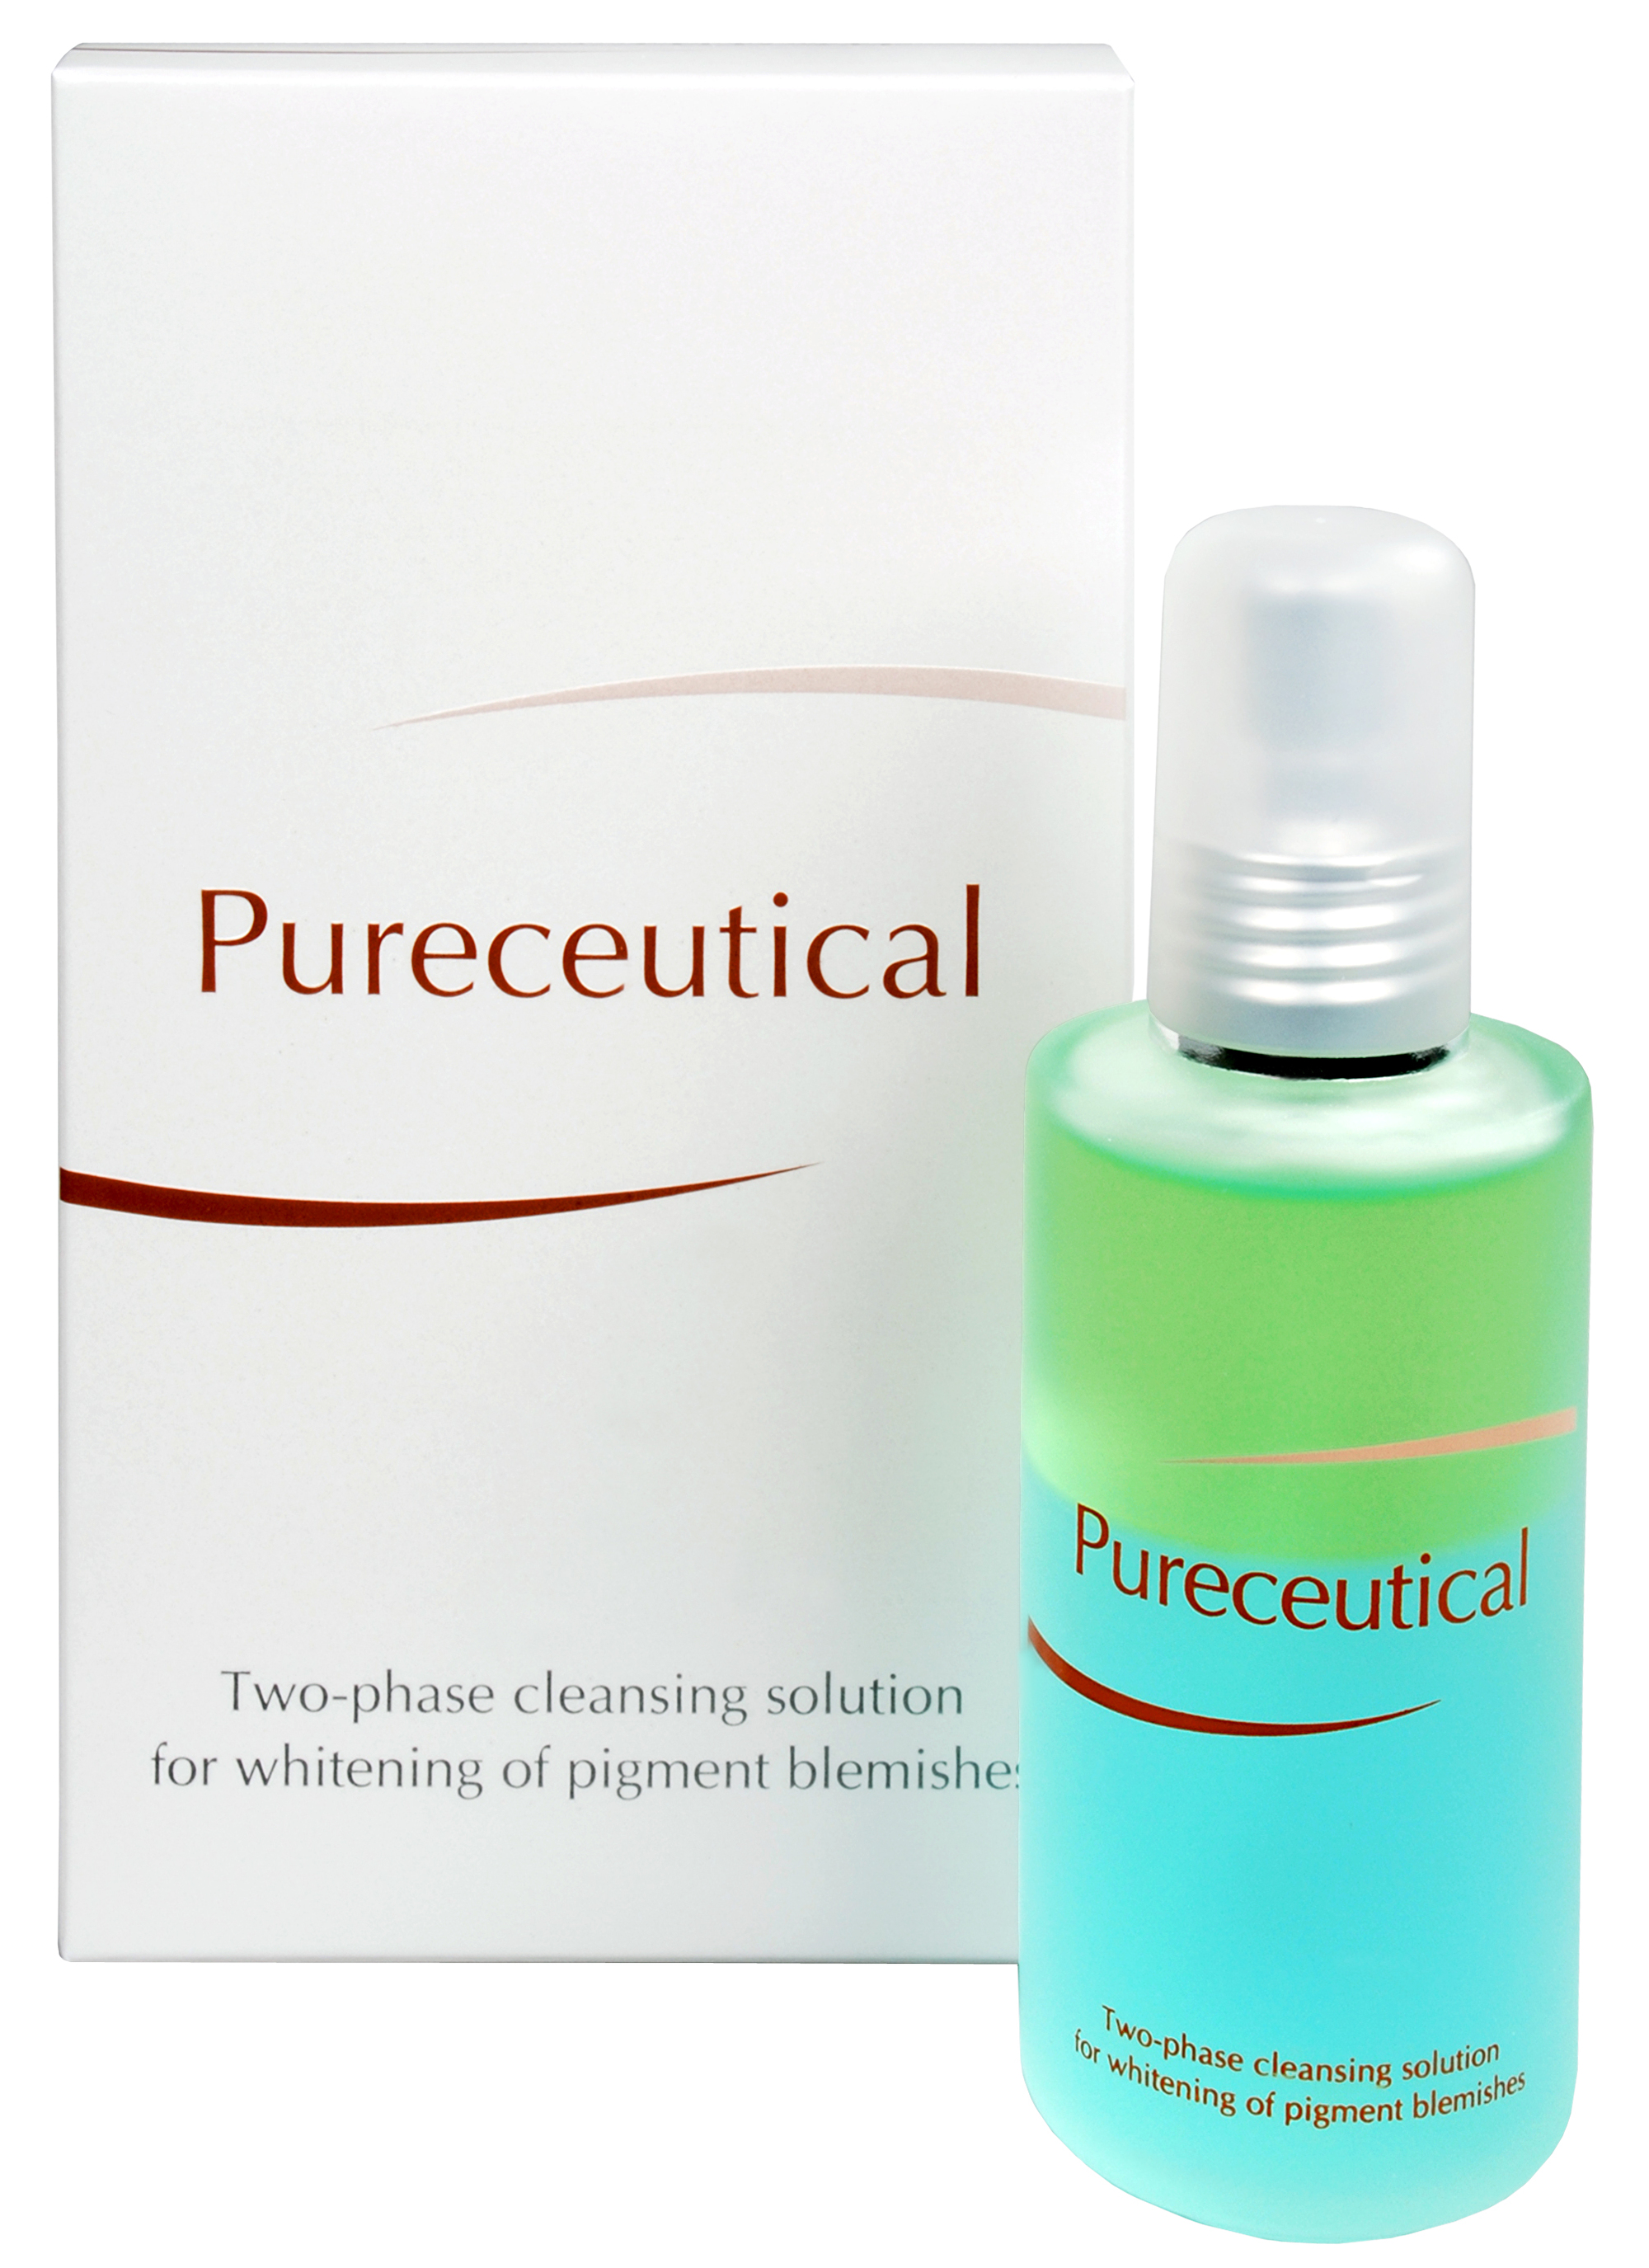 Zobrazit detail výrobku Fytofontana Pureceutical - dvojfázový čisticí roztok na zesvětlení pigmentových skvrn 125 ml + 2 měsíce na vrácení zboží